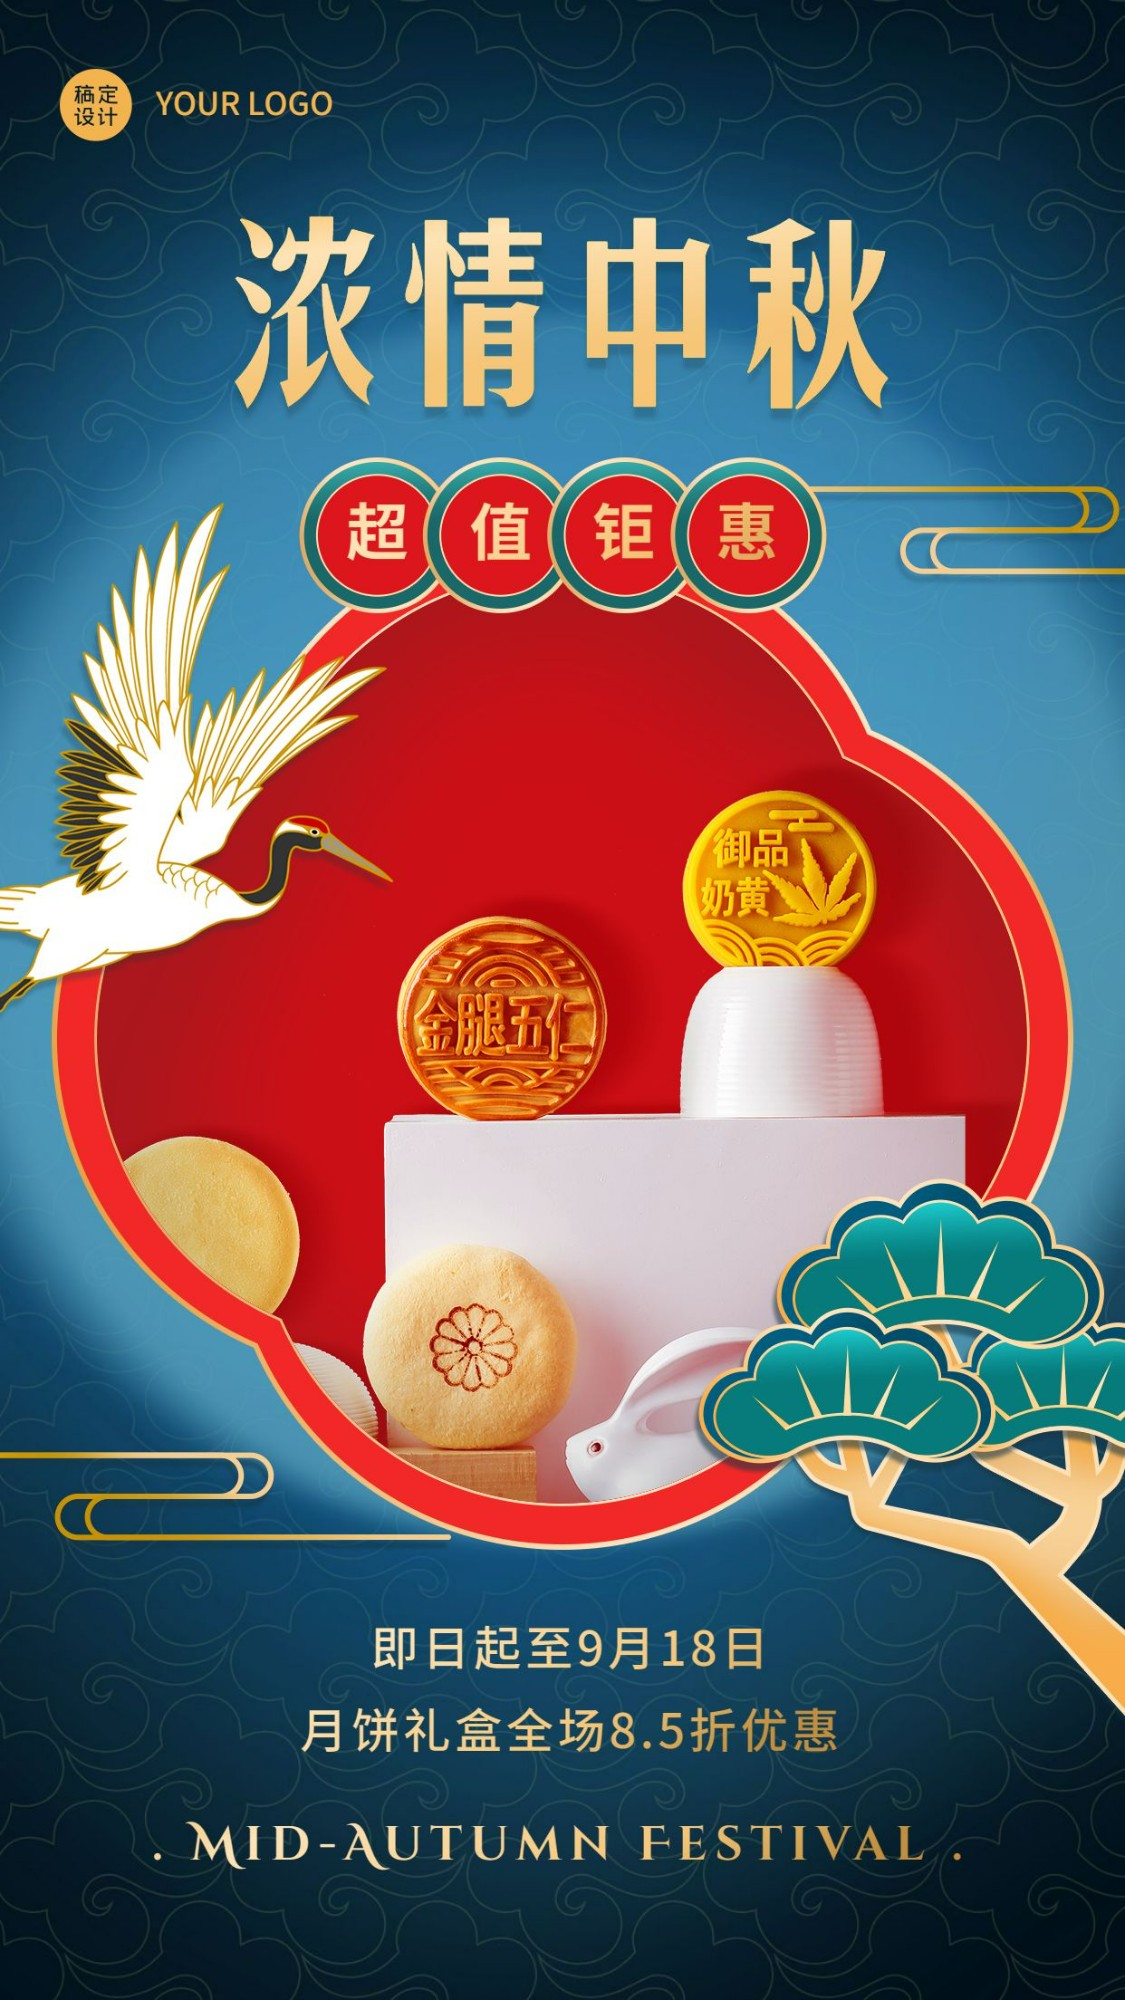 中秋节活动促销产品展示手机海报